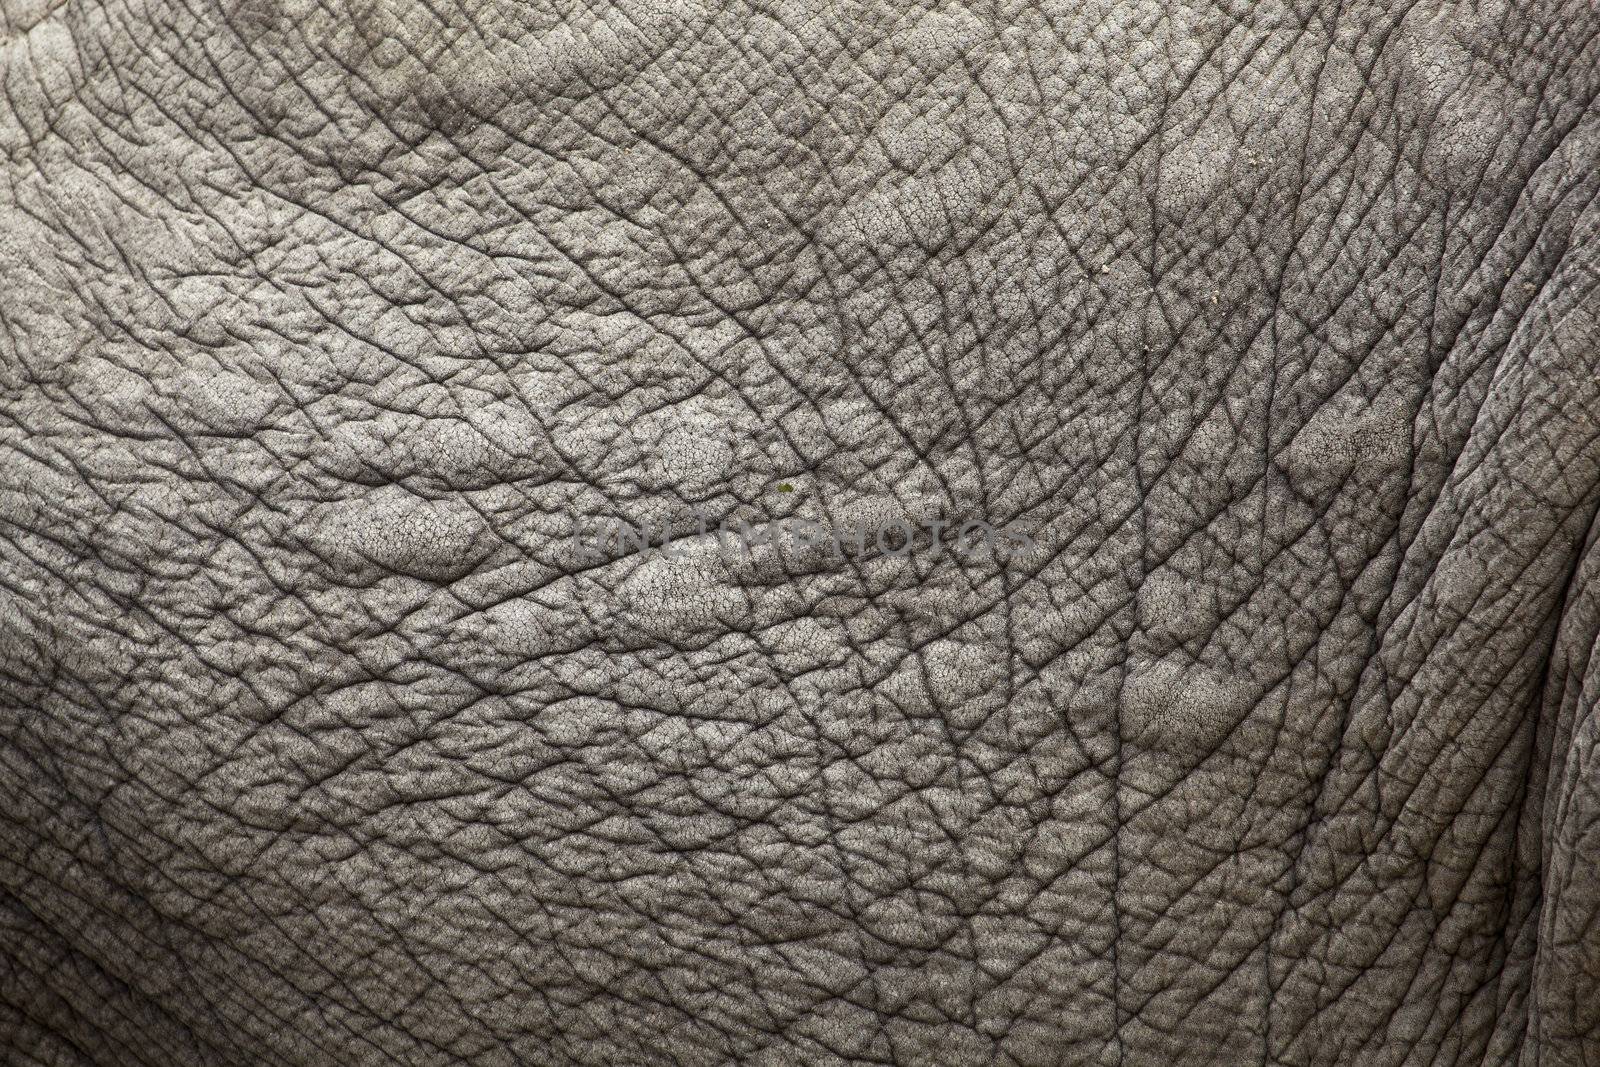 elephant skin by tjwvandongen